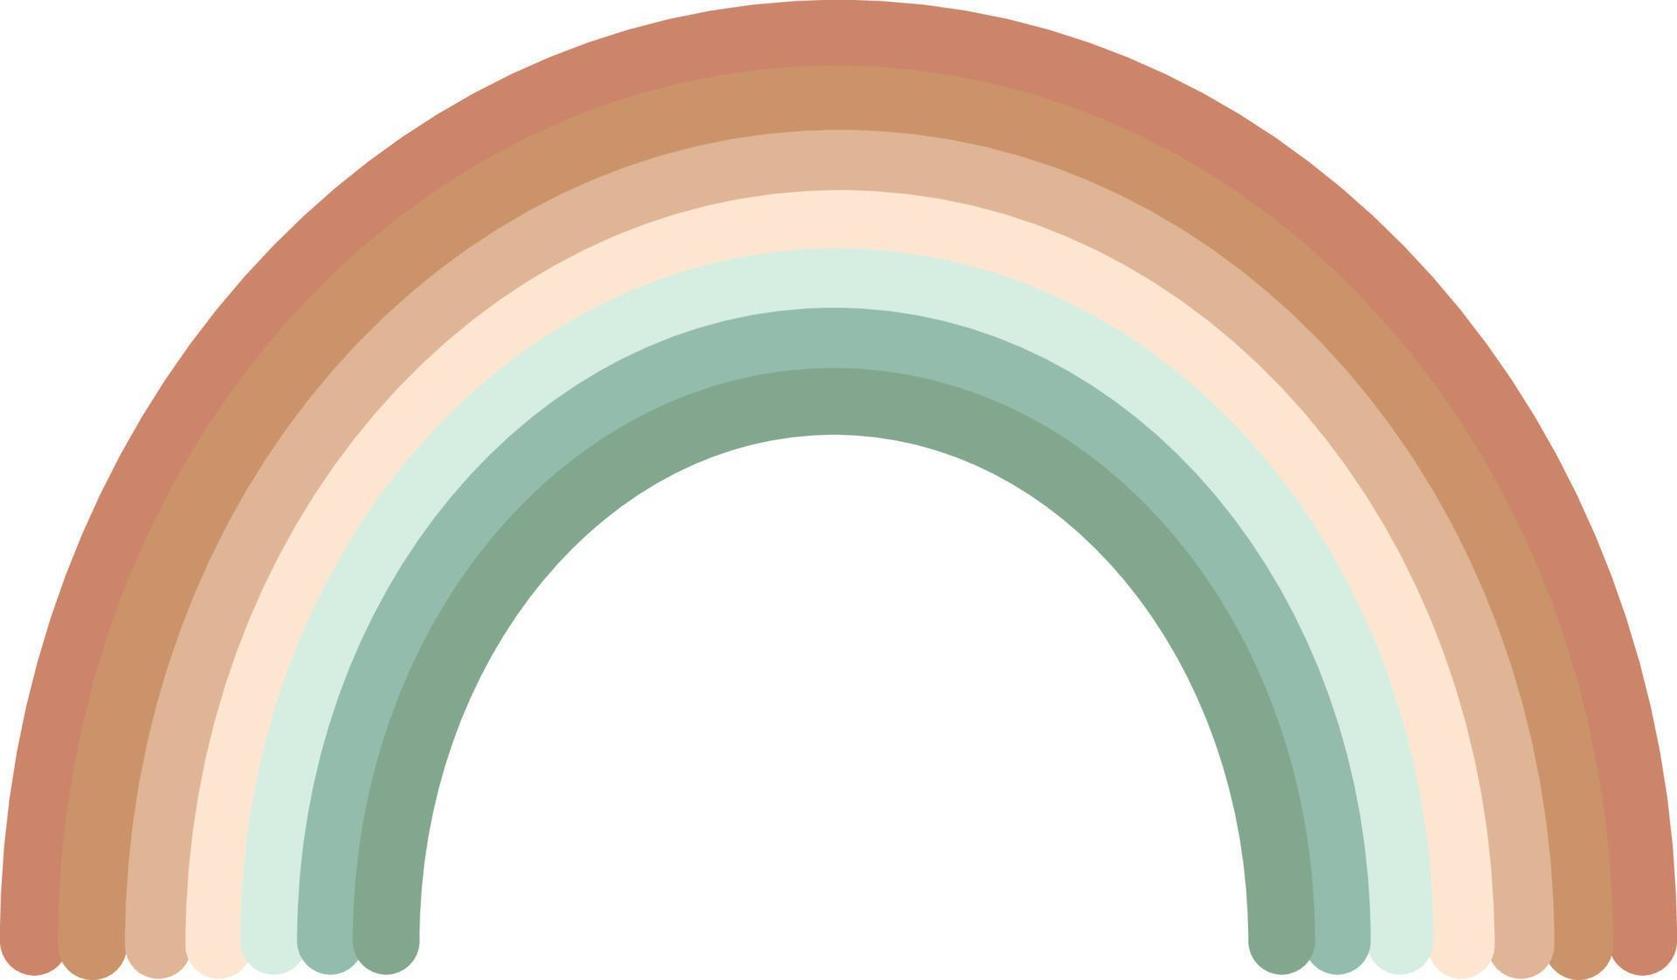 Regenbogen im flachen Stil. boho, sanftes pastellfarbenes niedliches element vektor